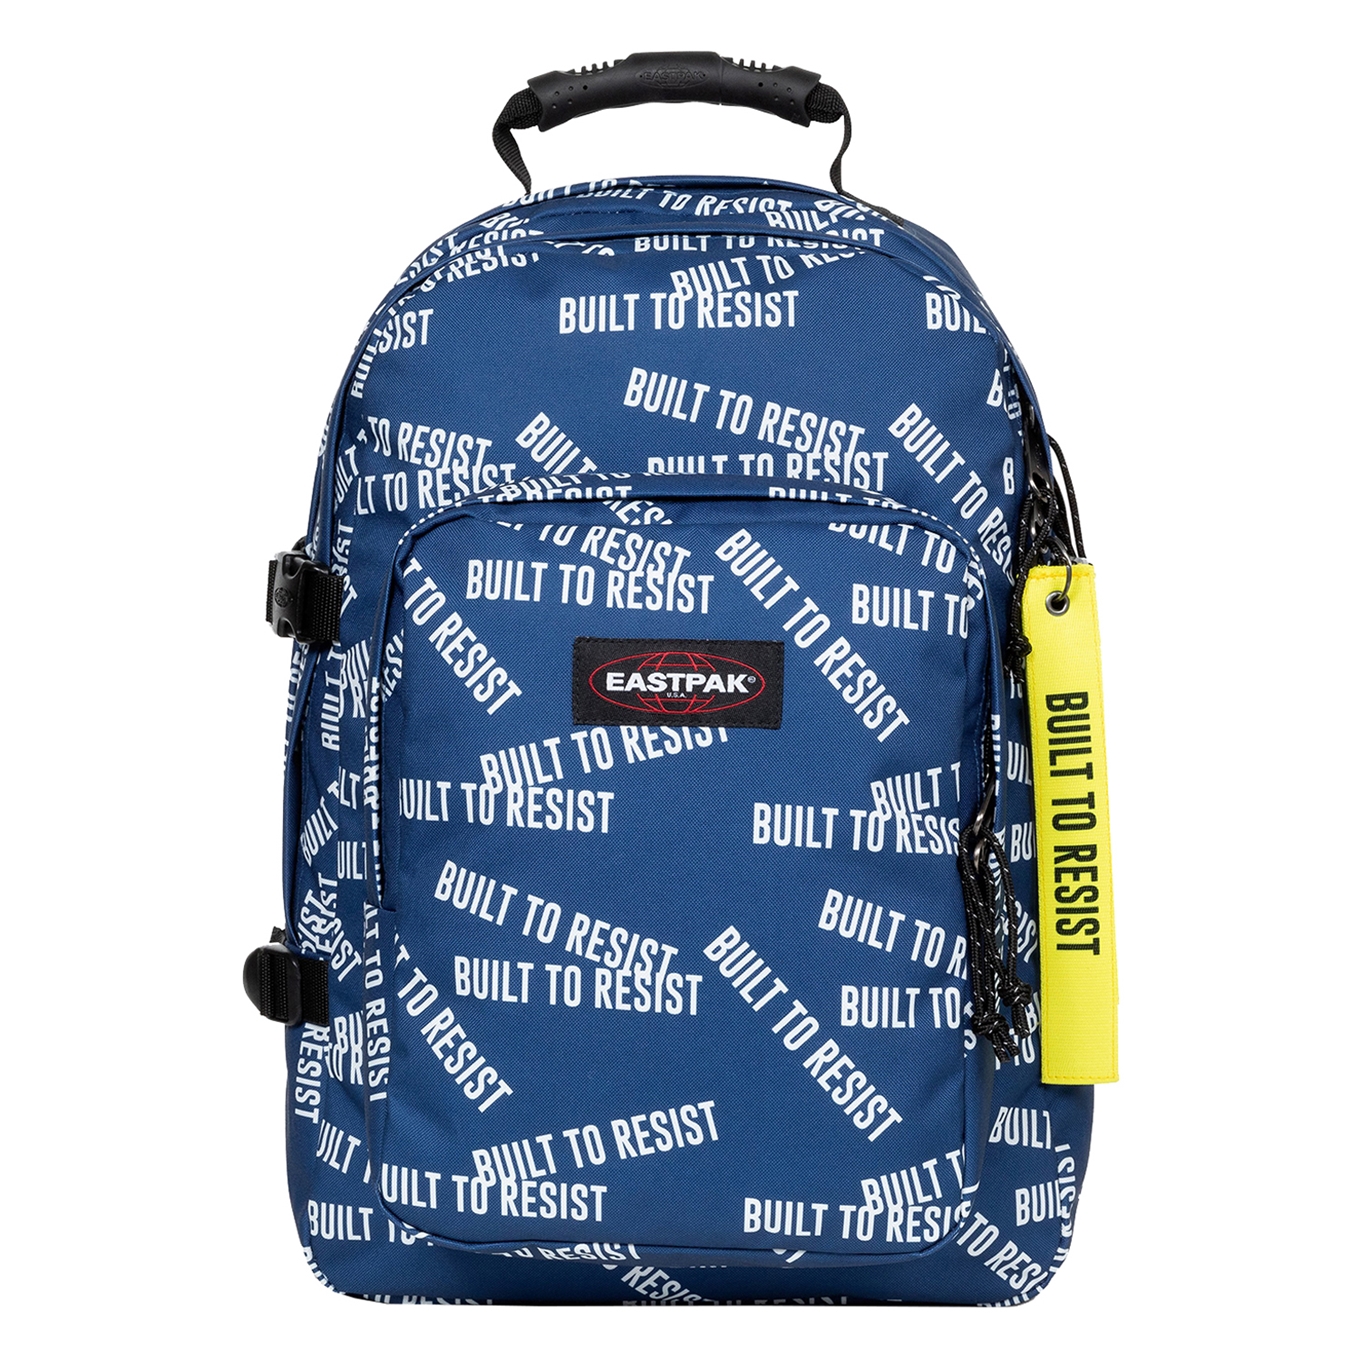 Eastpak Provider bold btr navy backpack